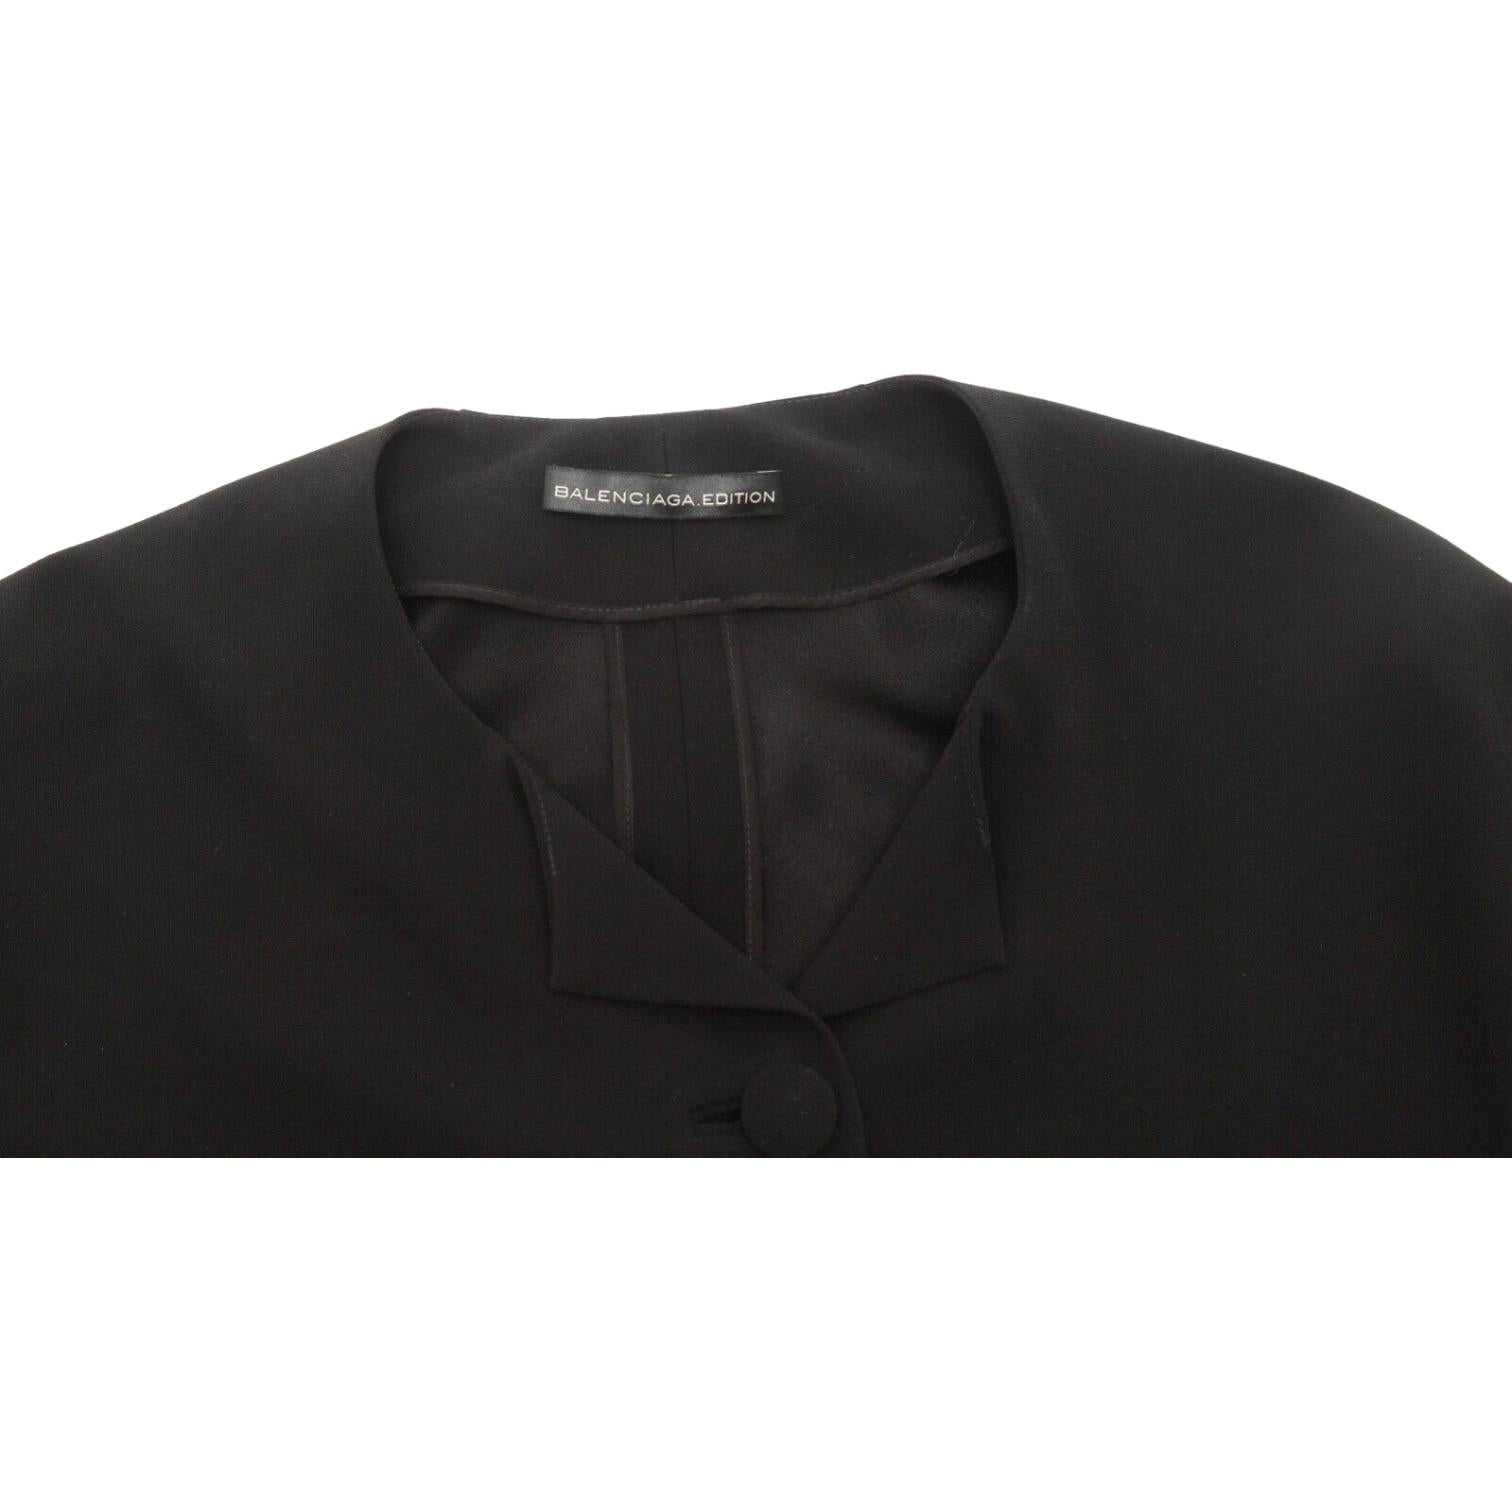 BALENCIAGA.EDITION Blouse Top Shirt BLACK Cape Sleeve Button Down Sz 36 4